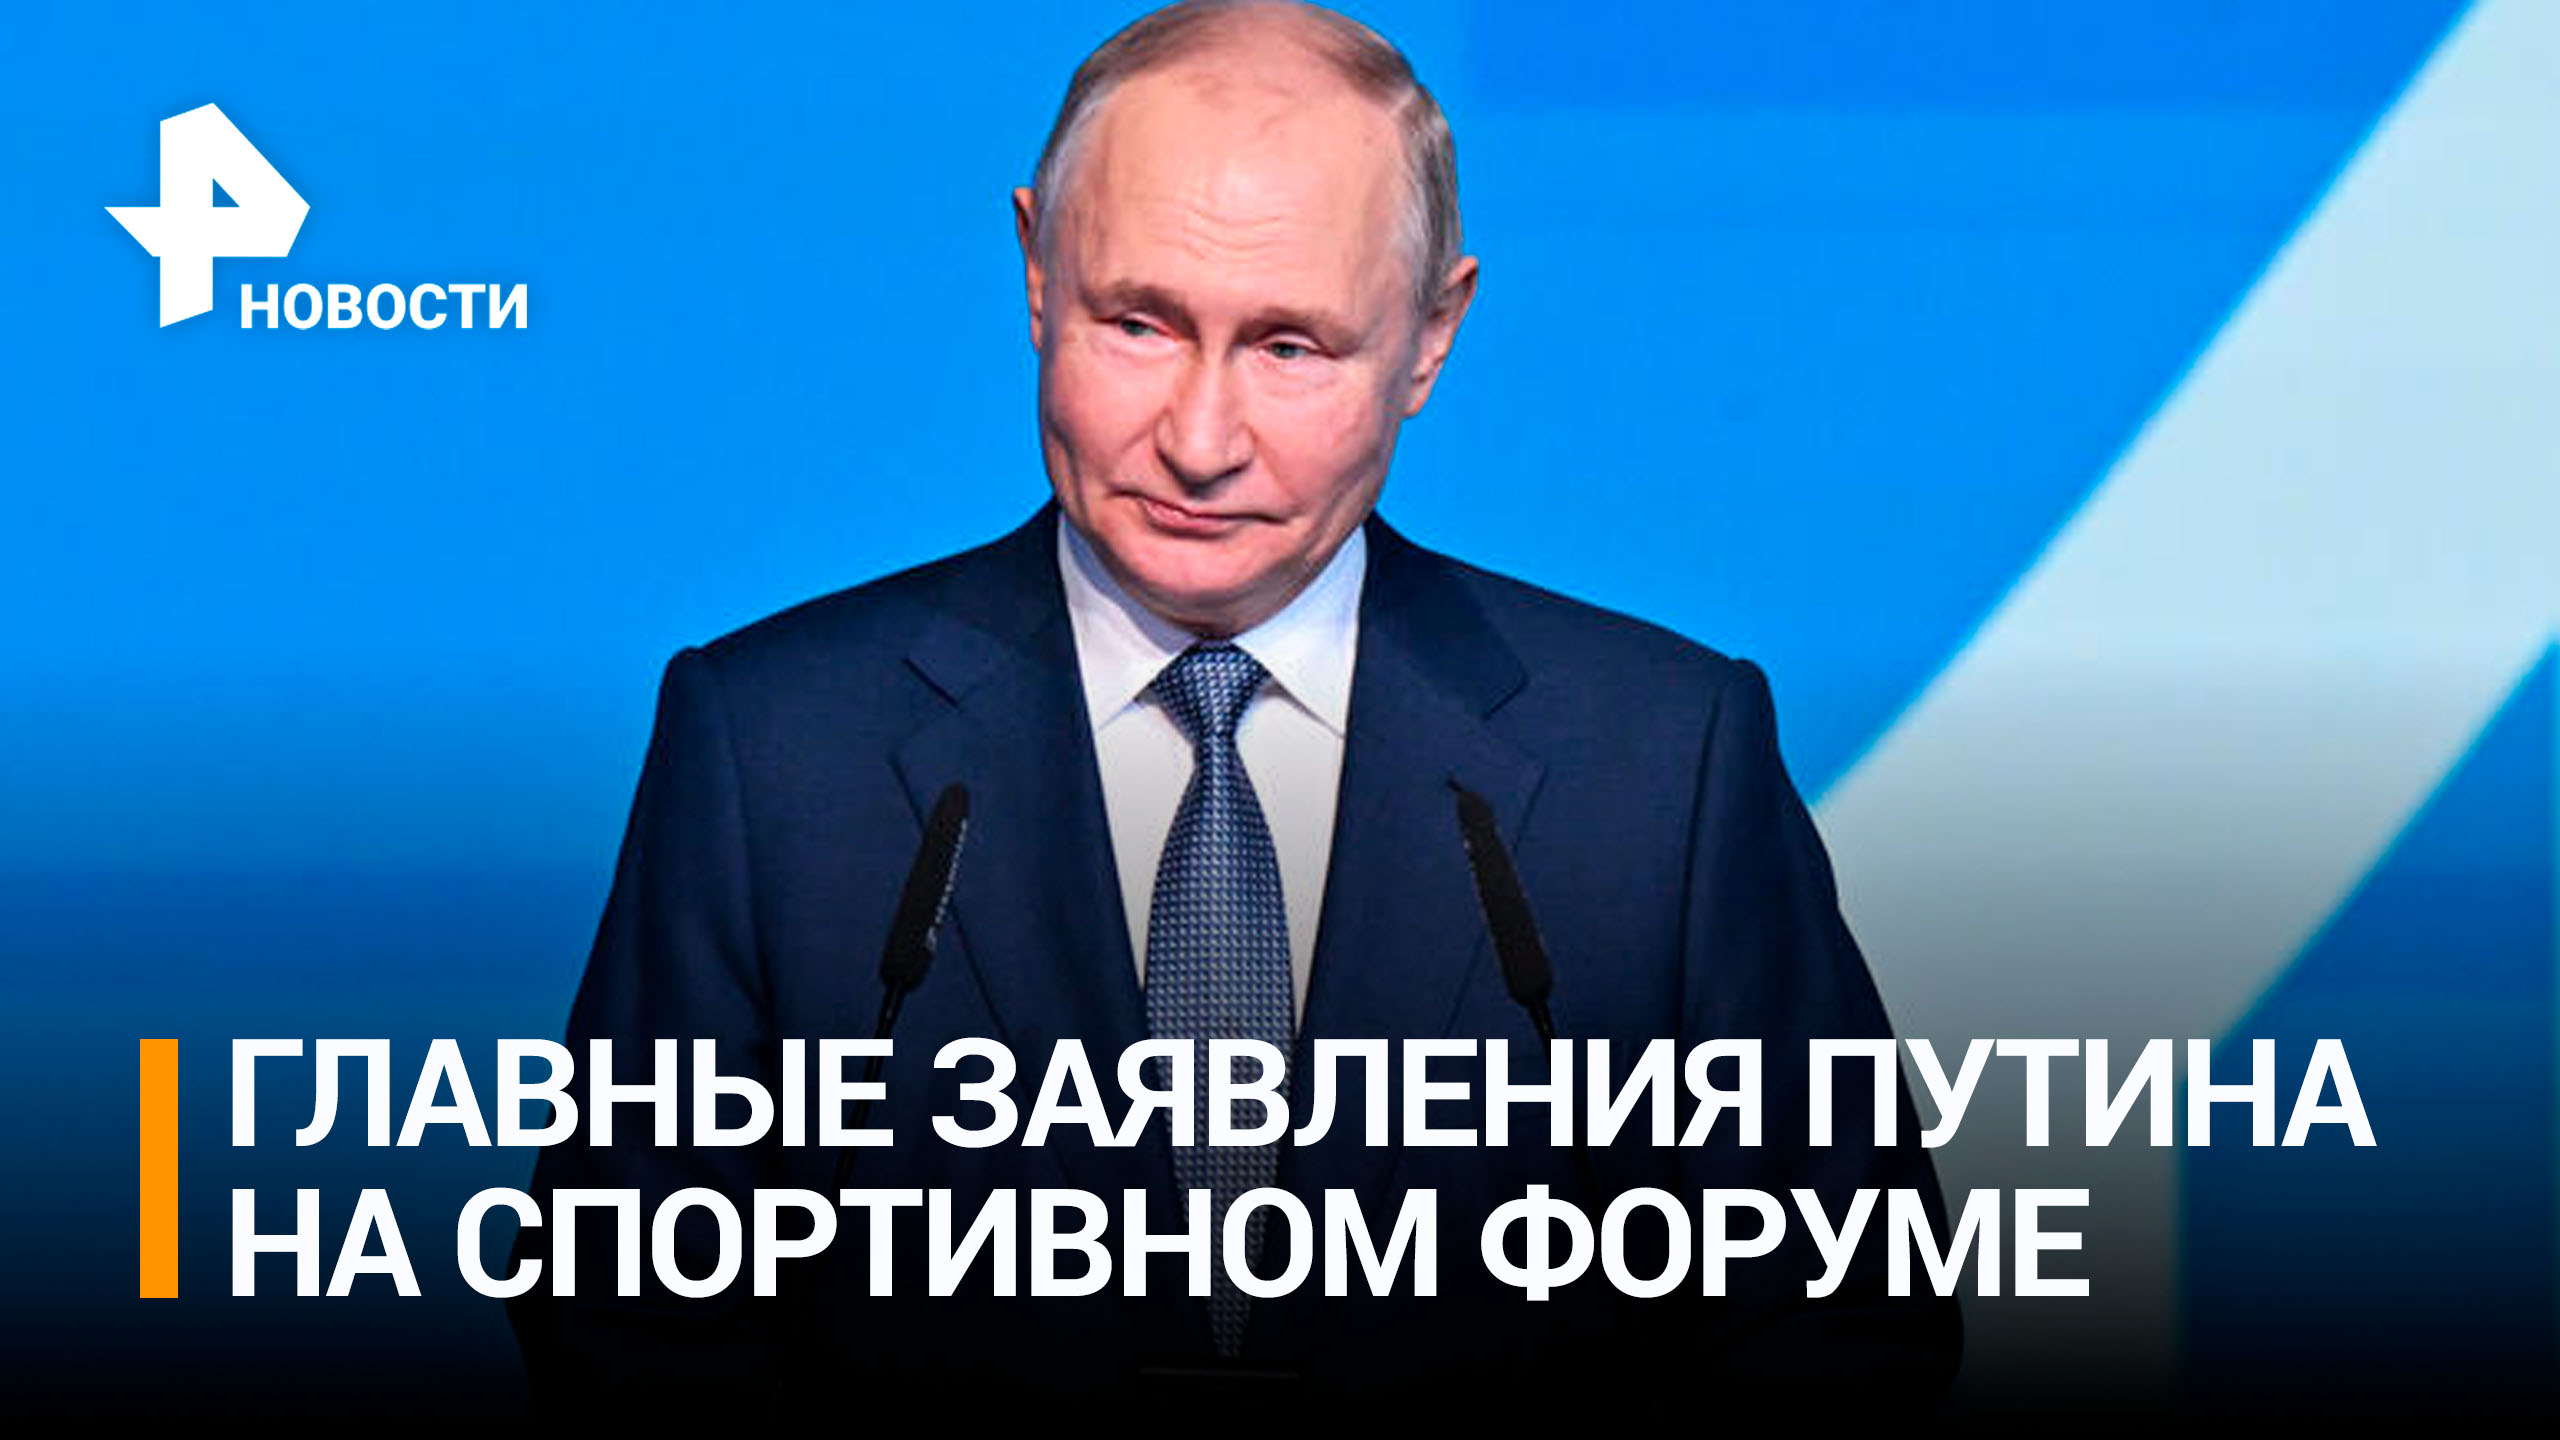 Путин приехал на спортивный форум в Перми / РЕН Новости